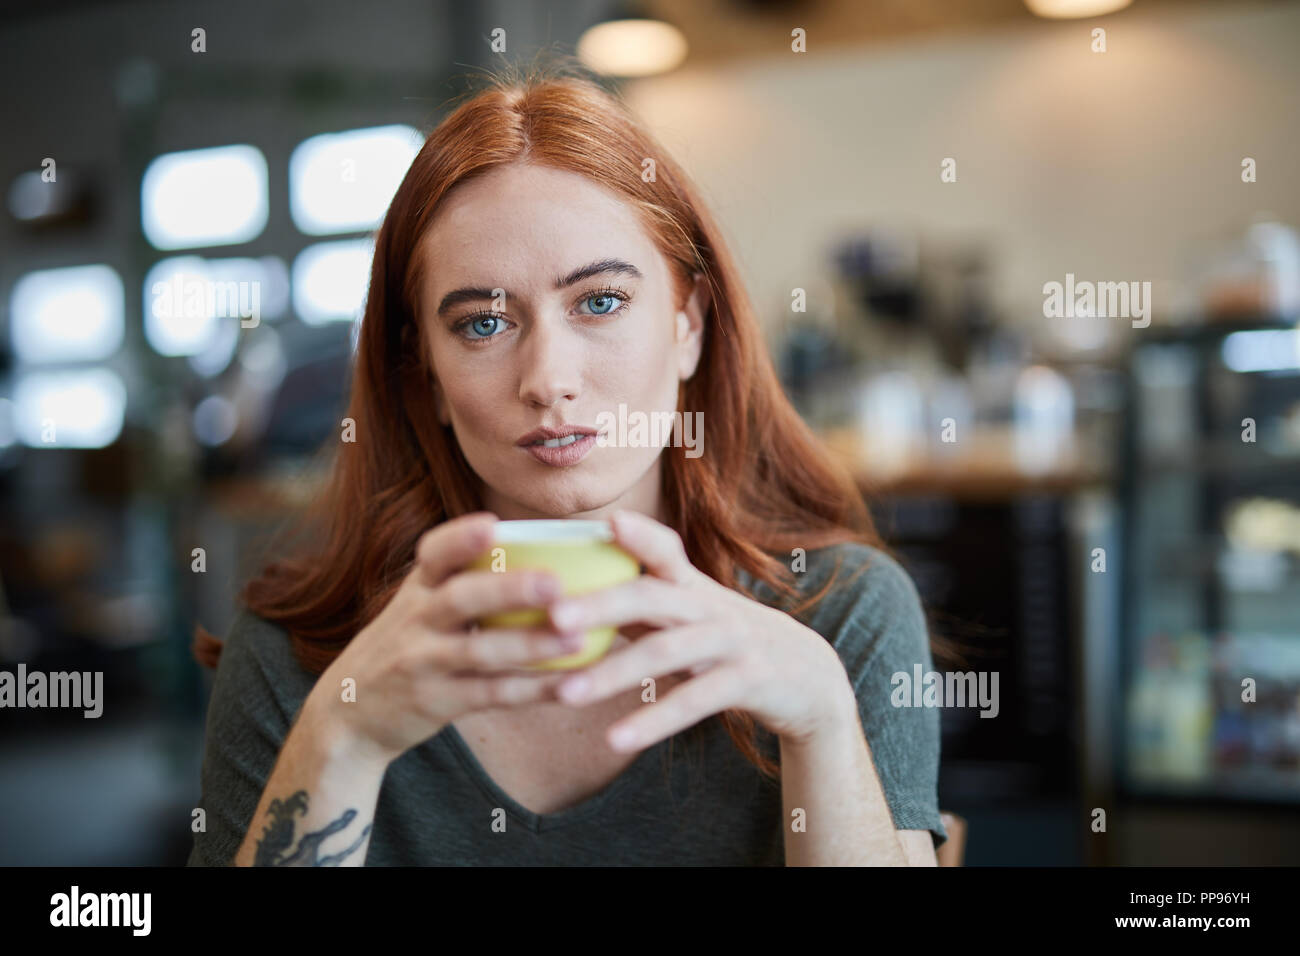 Une seule femelle, est assis dans un café de la ville avec une boisson chaude dans une tasse, looking at camera Banque D'Images